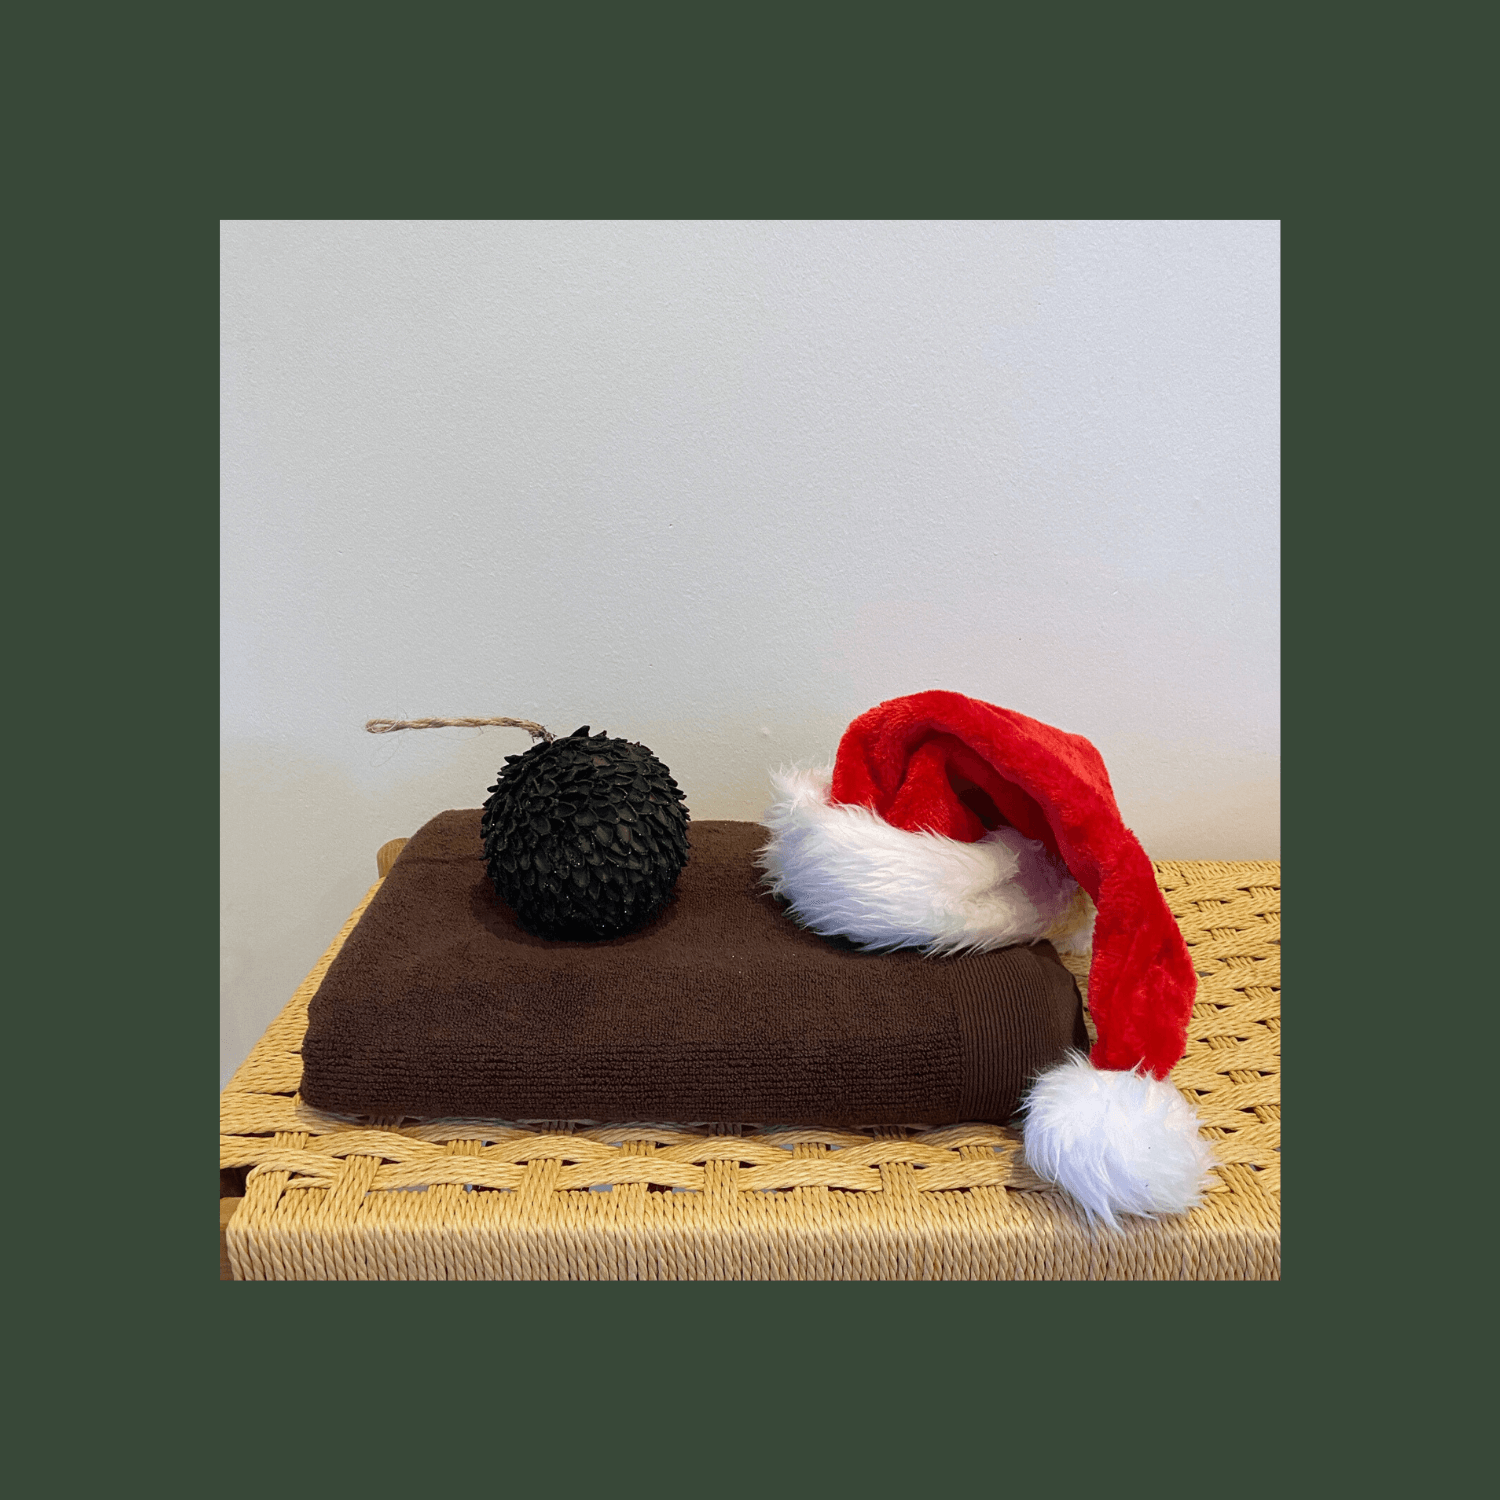 Julebillede af brunt bomuldshåndklæde på træbænk med nissehue og grankogle ovenpå